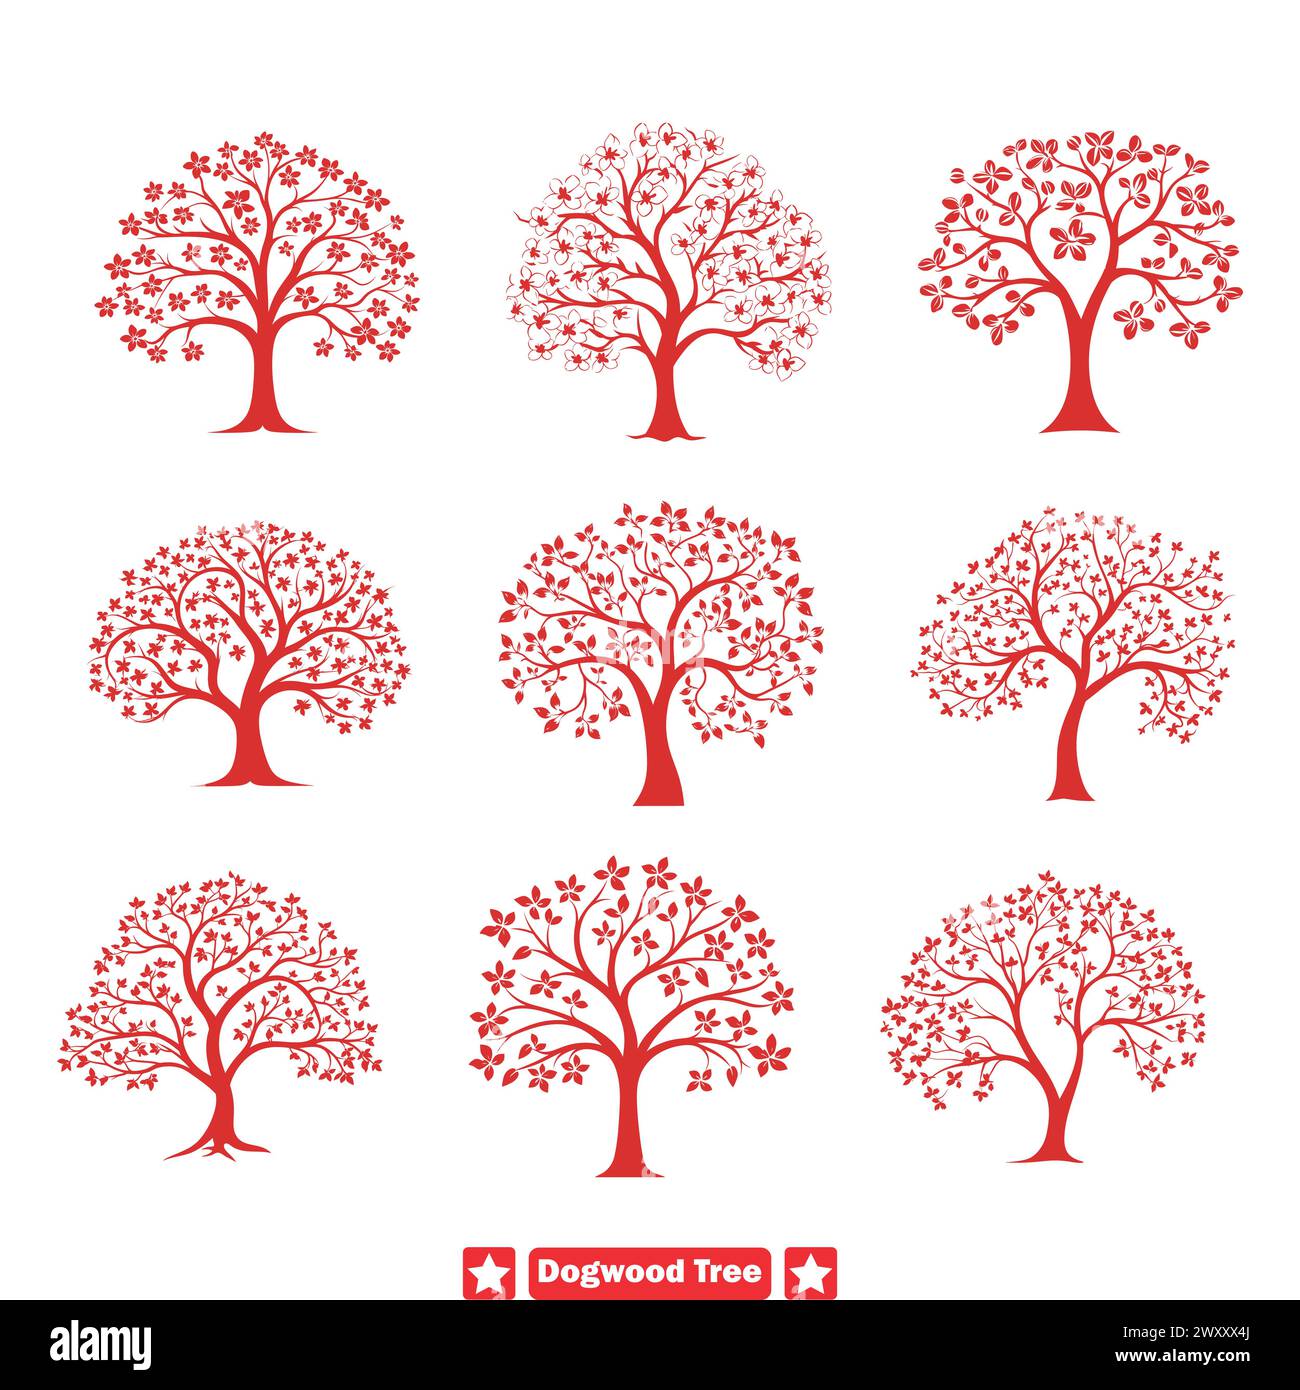 Botanisches Dogwood Tree Silhouette Bundle vielseitige Elemente für die Gestaltung fesselnder Designs Stock Vektor